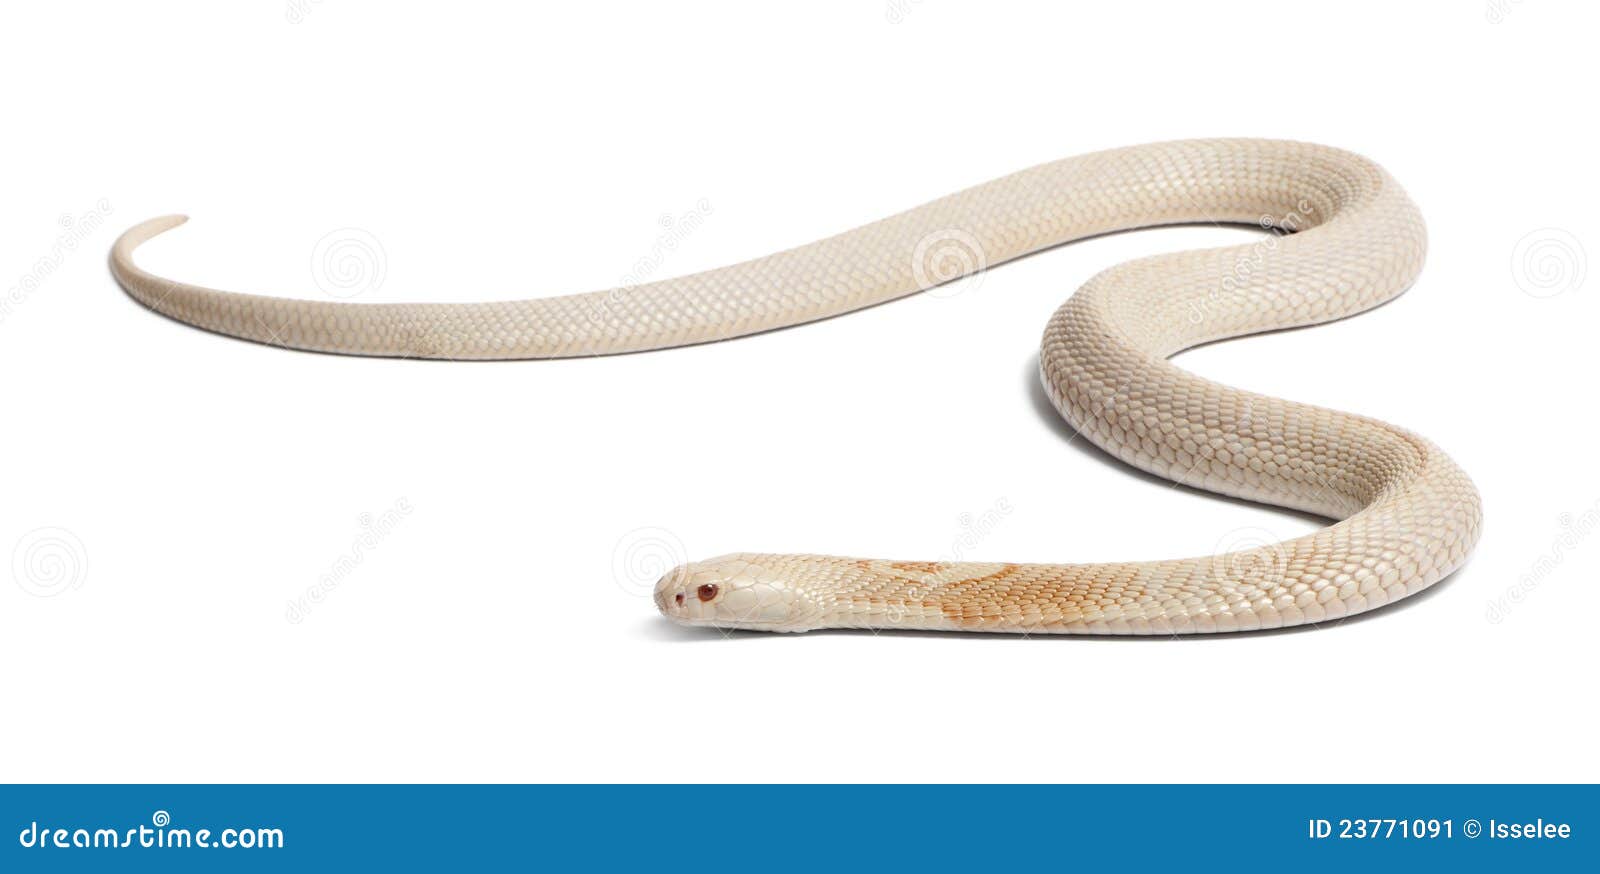 albinos monocled cobra - naja kaouthia (poisonous)